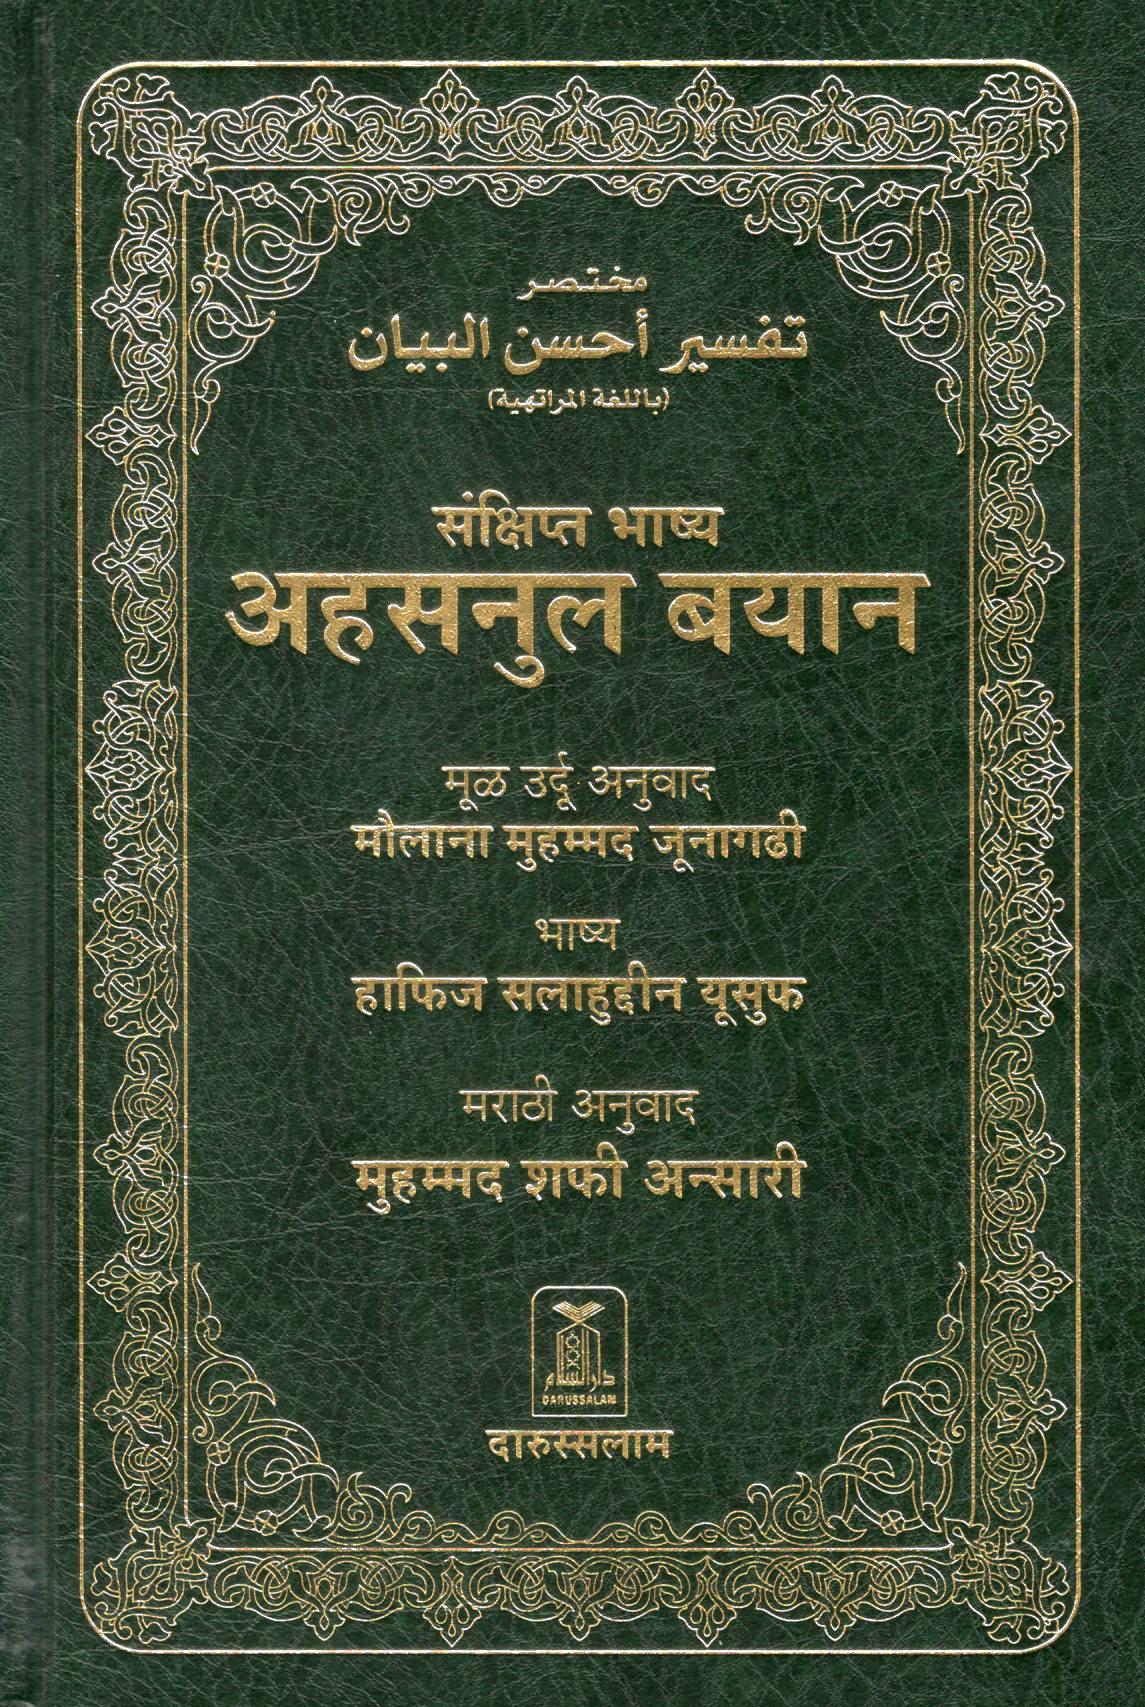 The Noble Quran - Marathi Translation